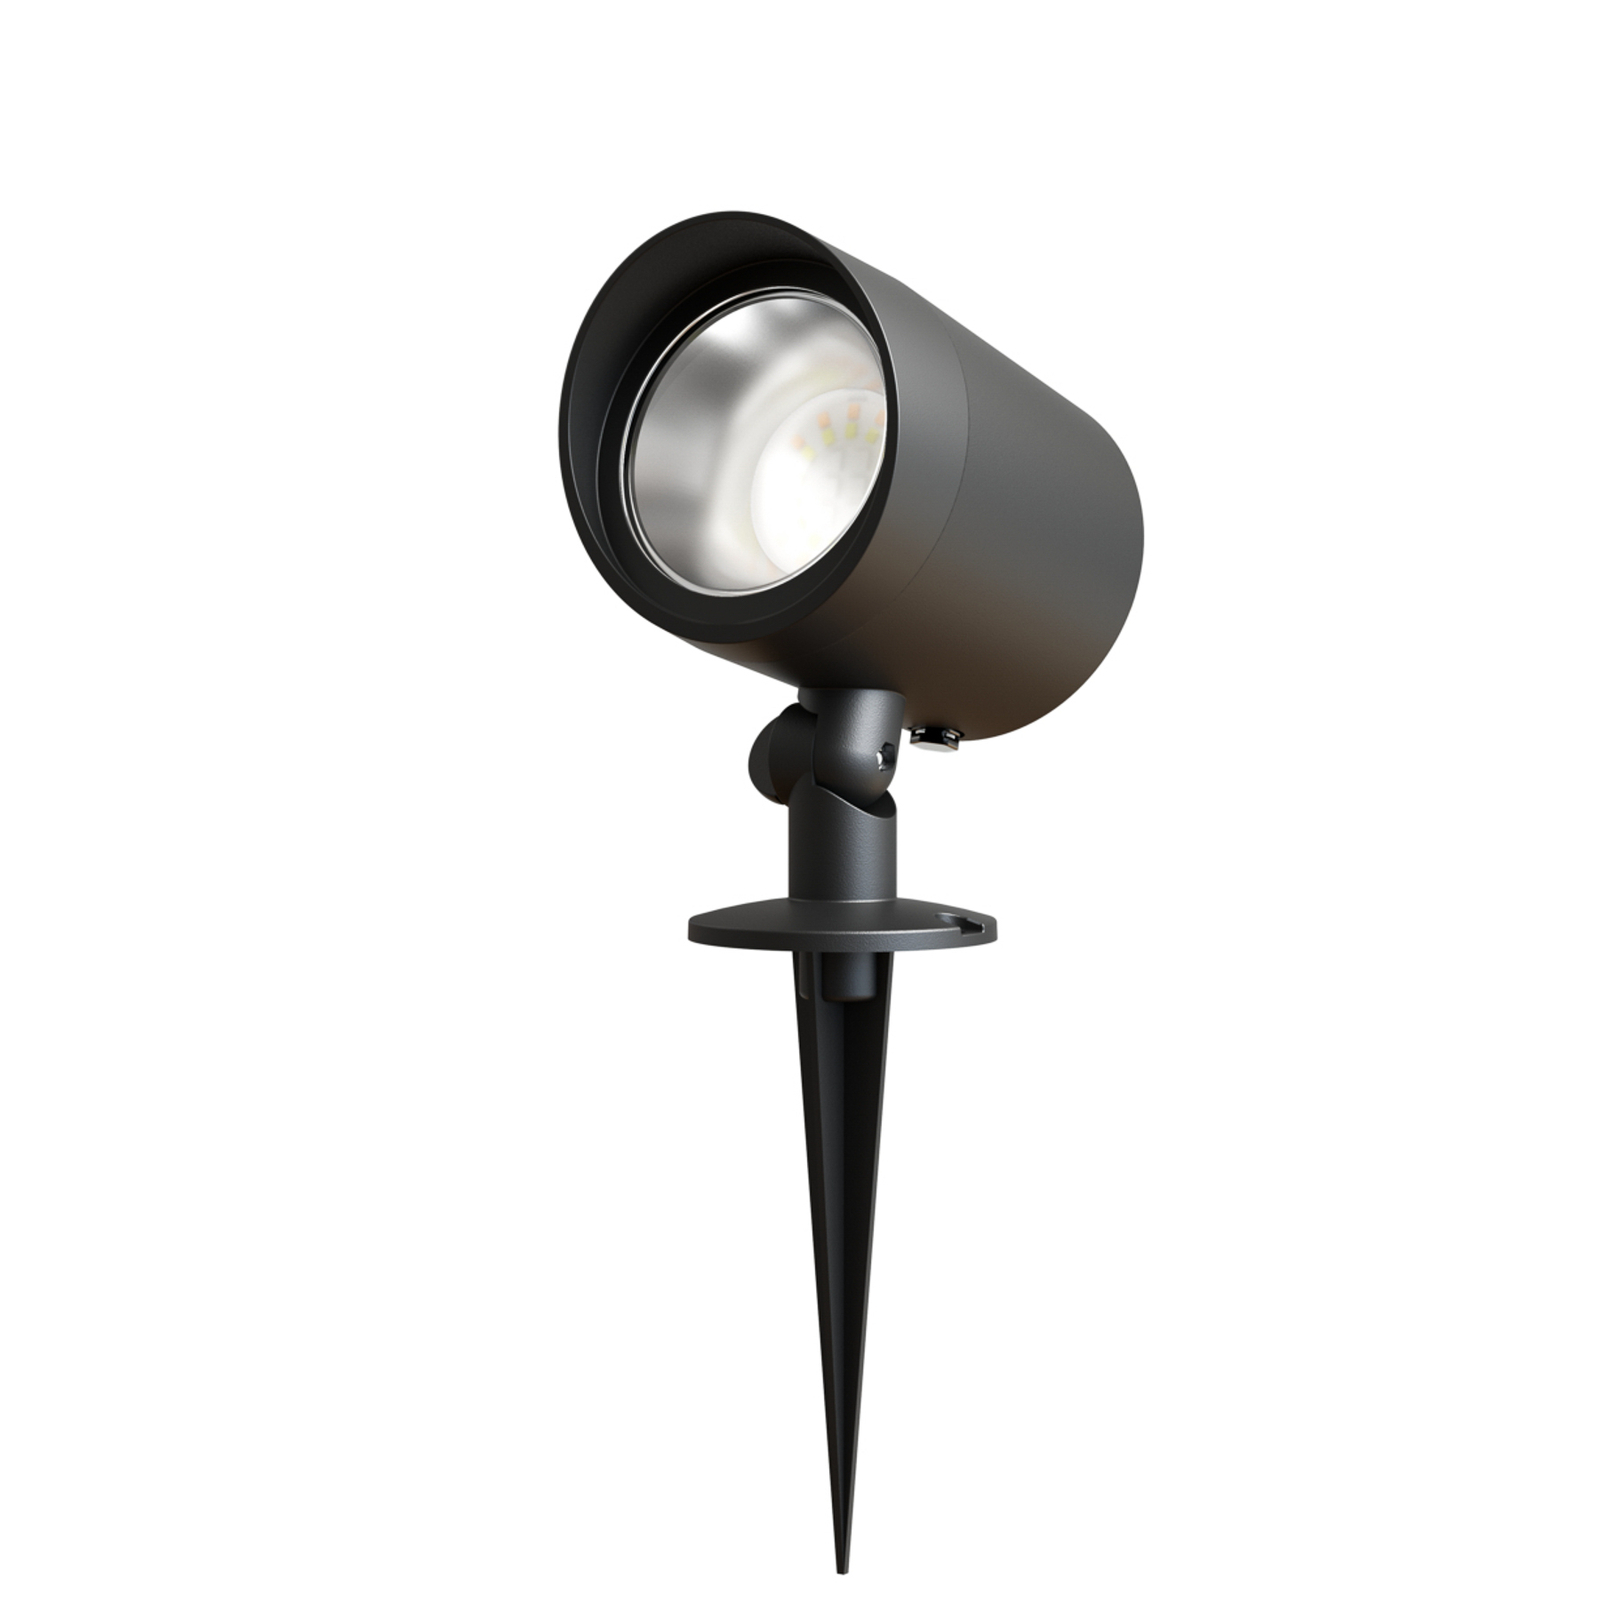 Venkovní reflektor Calex LED, zemní hrot, zástrčka, černý, 2 700 K